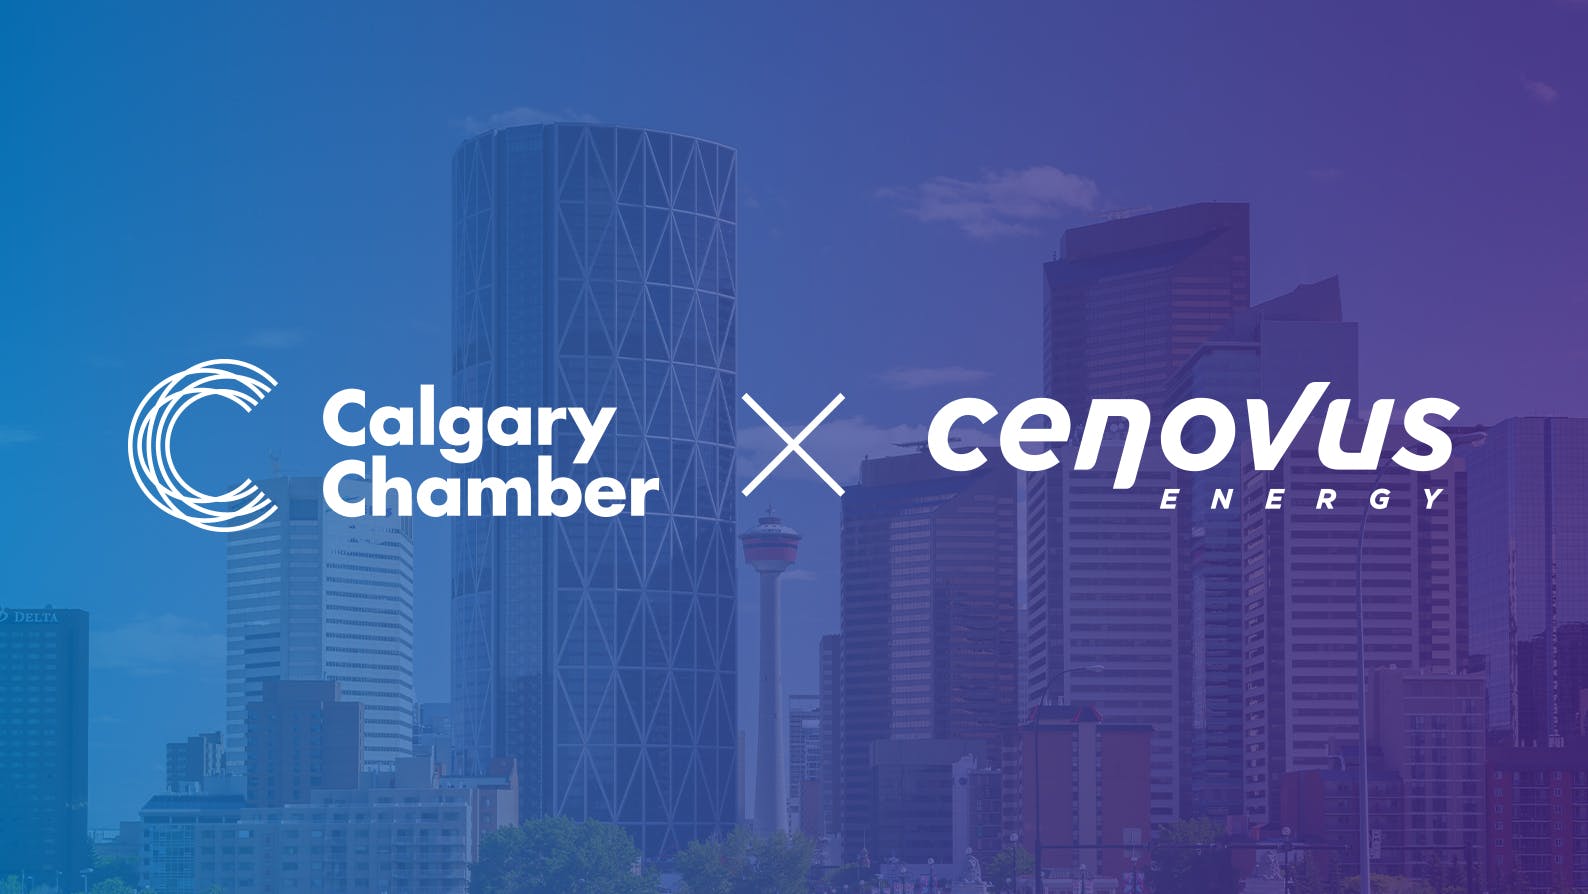 Calgary Chamber partnership with Cenovus Energy